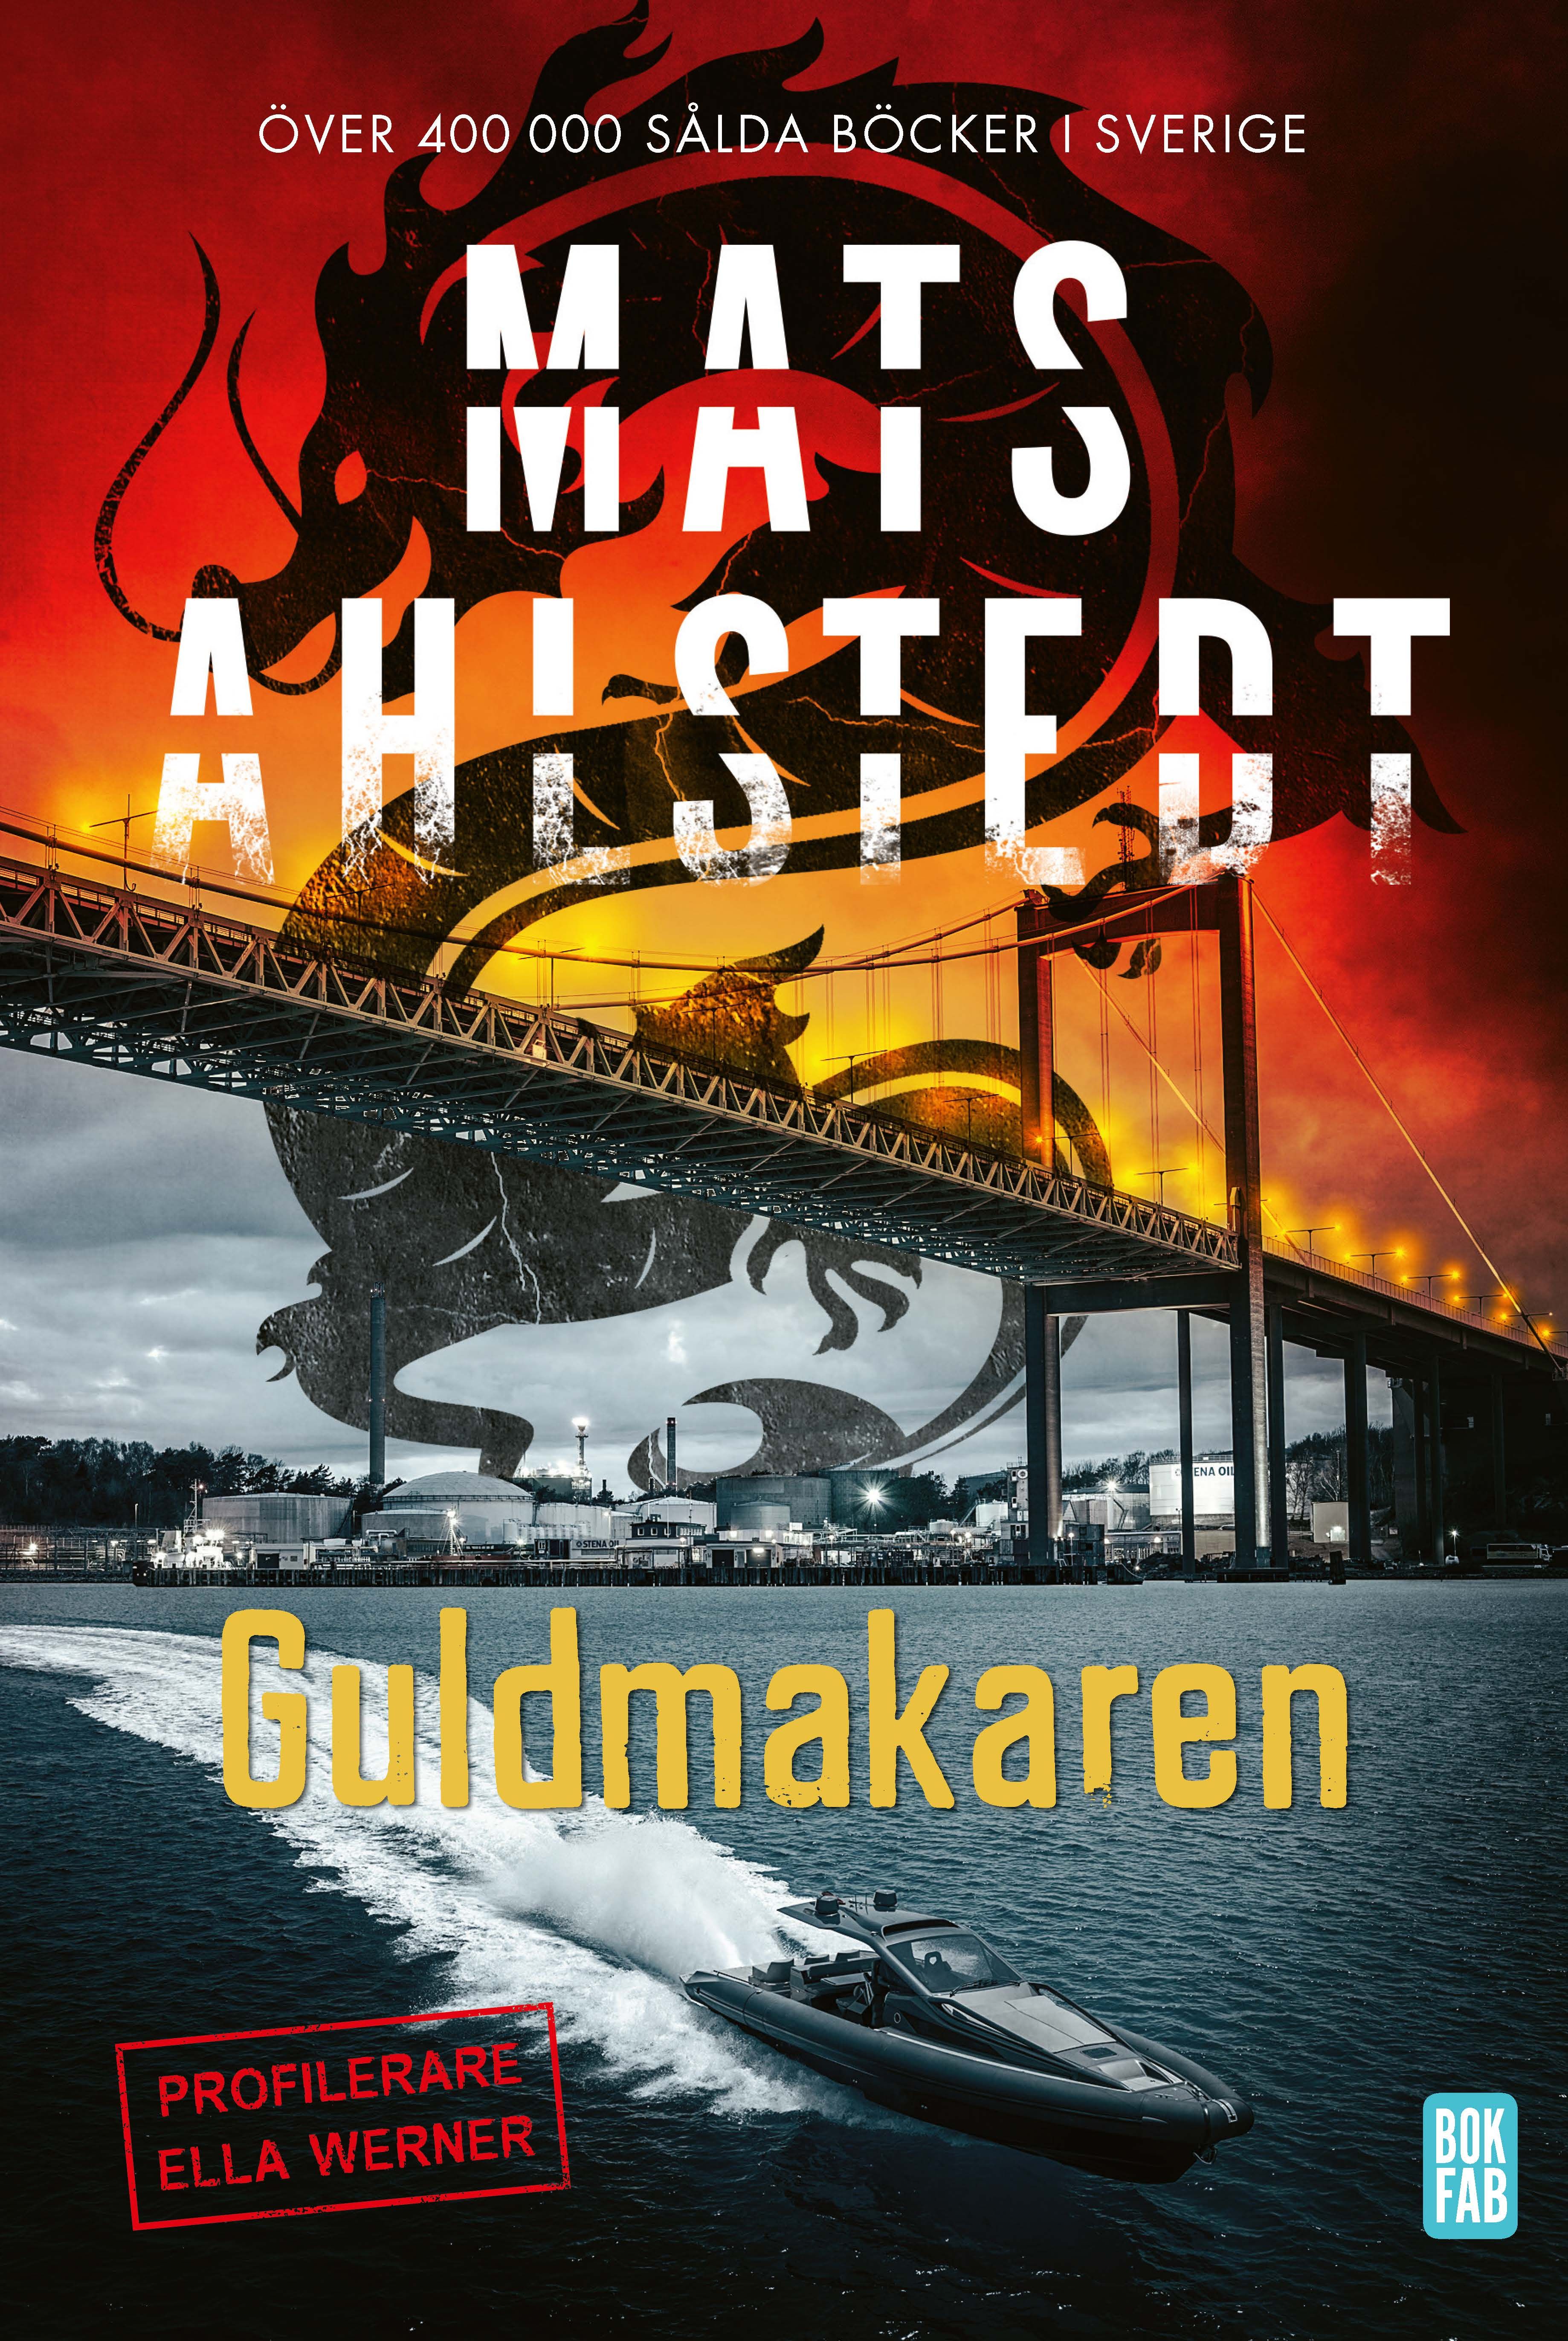 Guldmakaren, eBook by Mats Ahlstedt